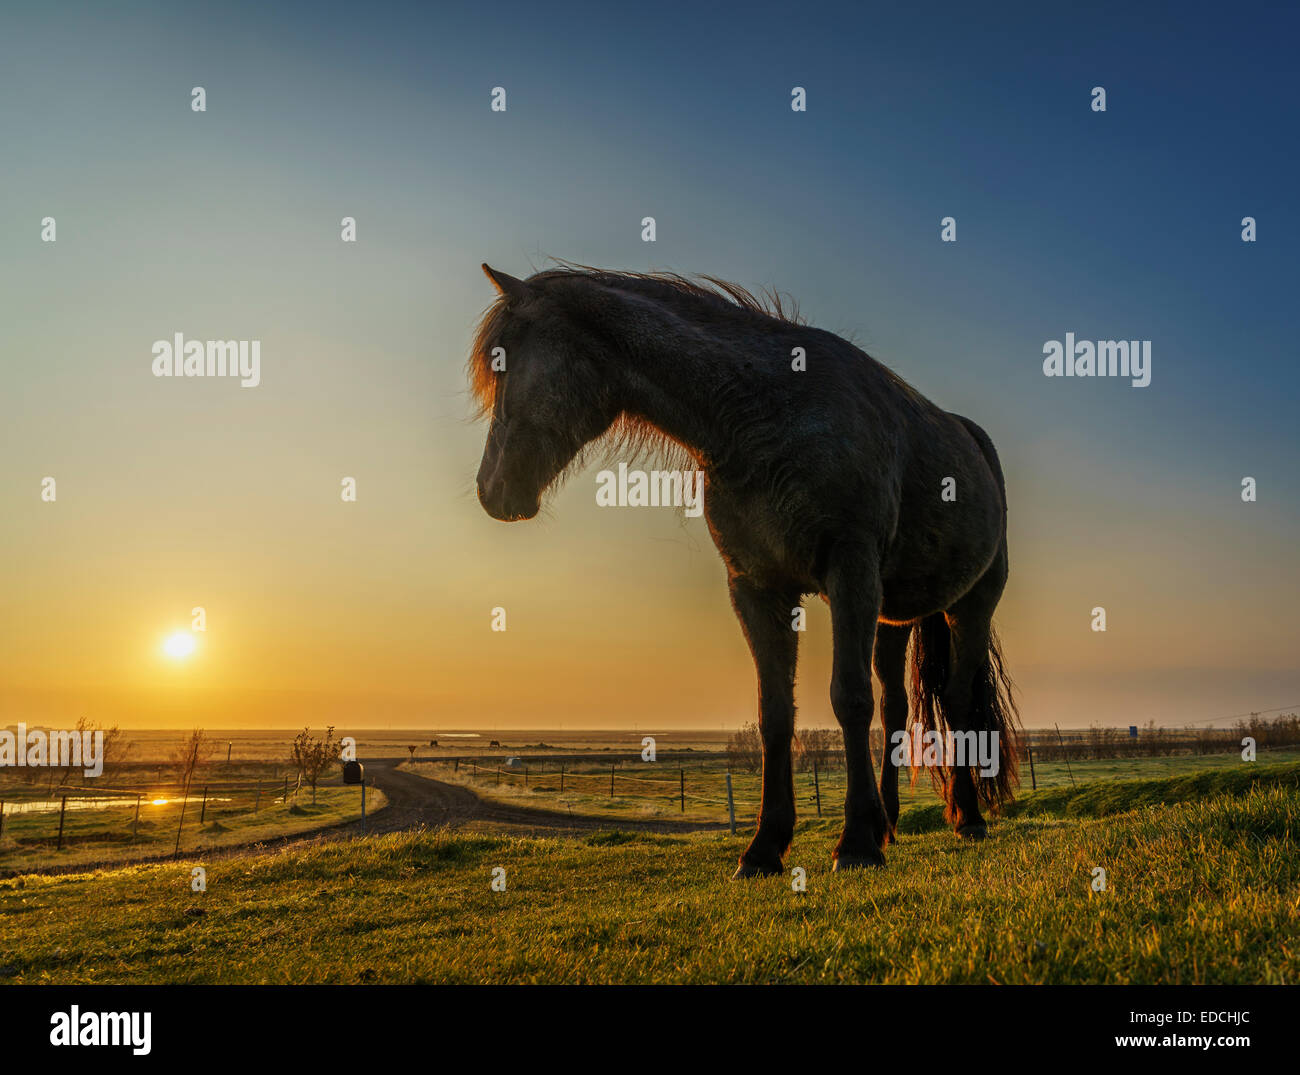 Horses grazing at sunset, Iceland Stock Photo